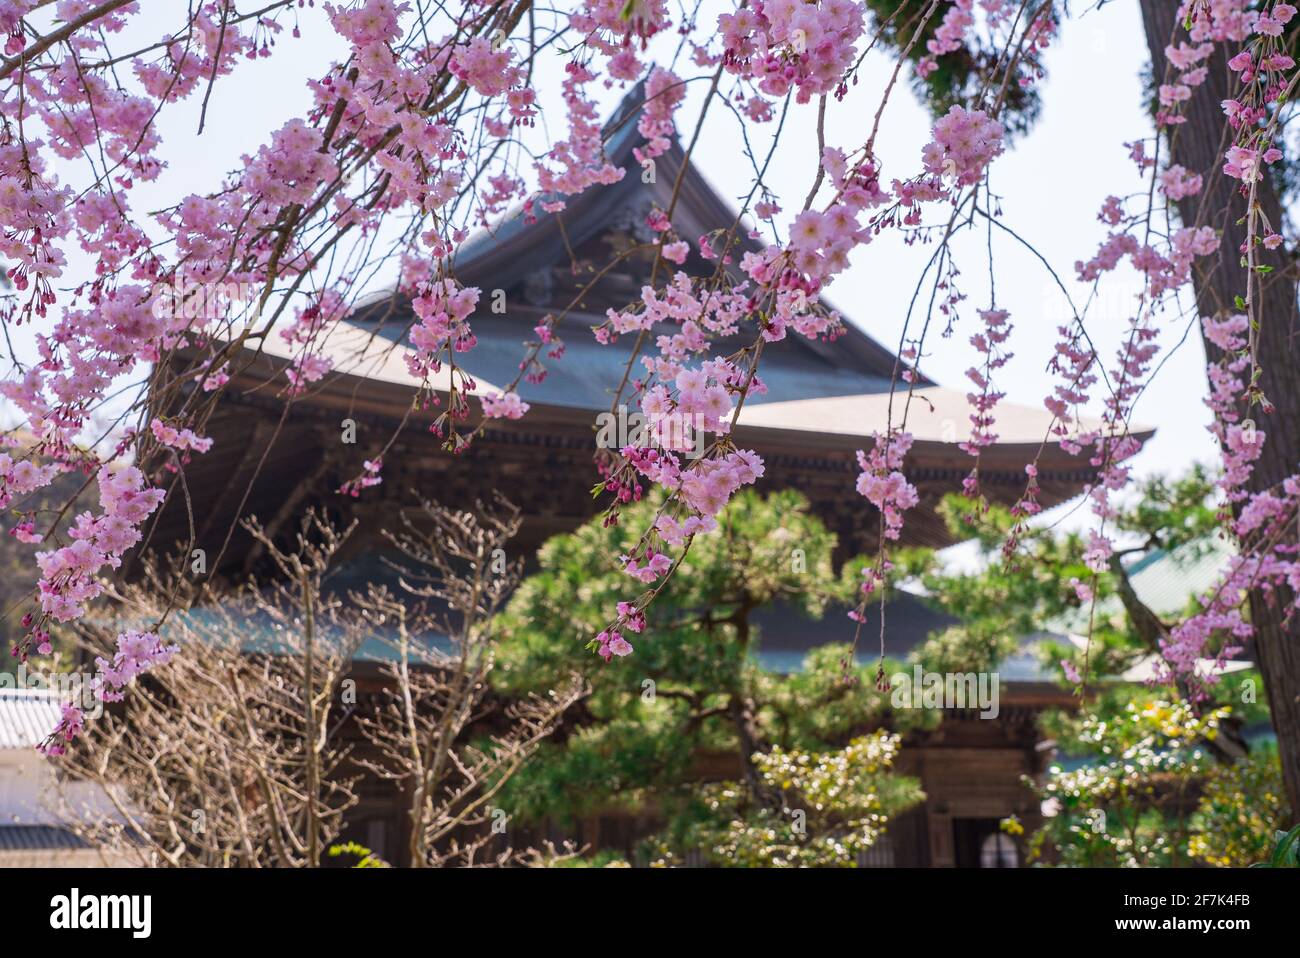 Hokoku-ji Buddhist Temple in Kamakura during Sakura Season. Pink flowers from sakura cherry blossom trees in full bloom. Stock Photo